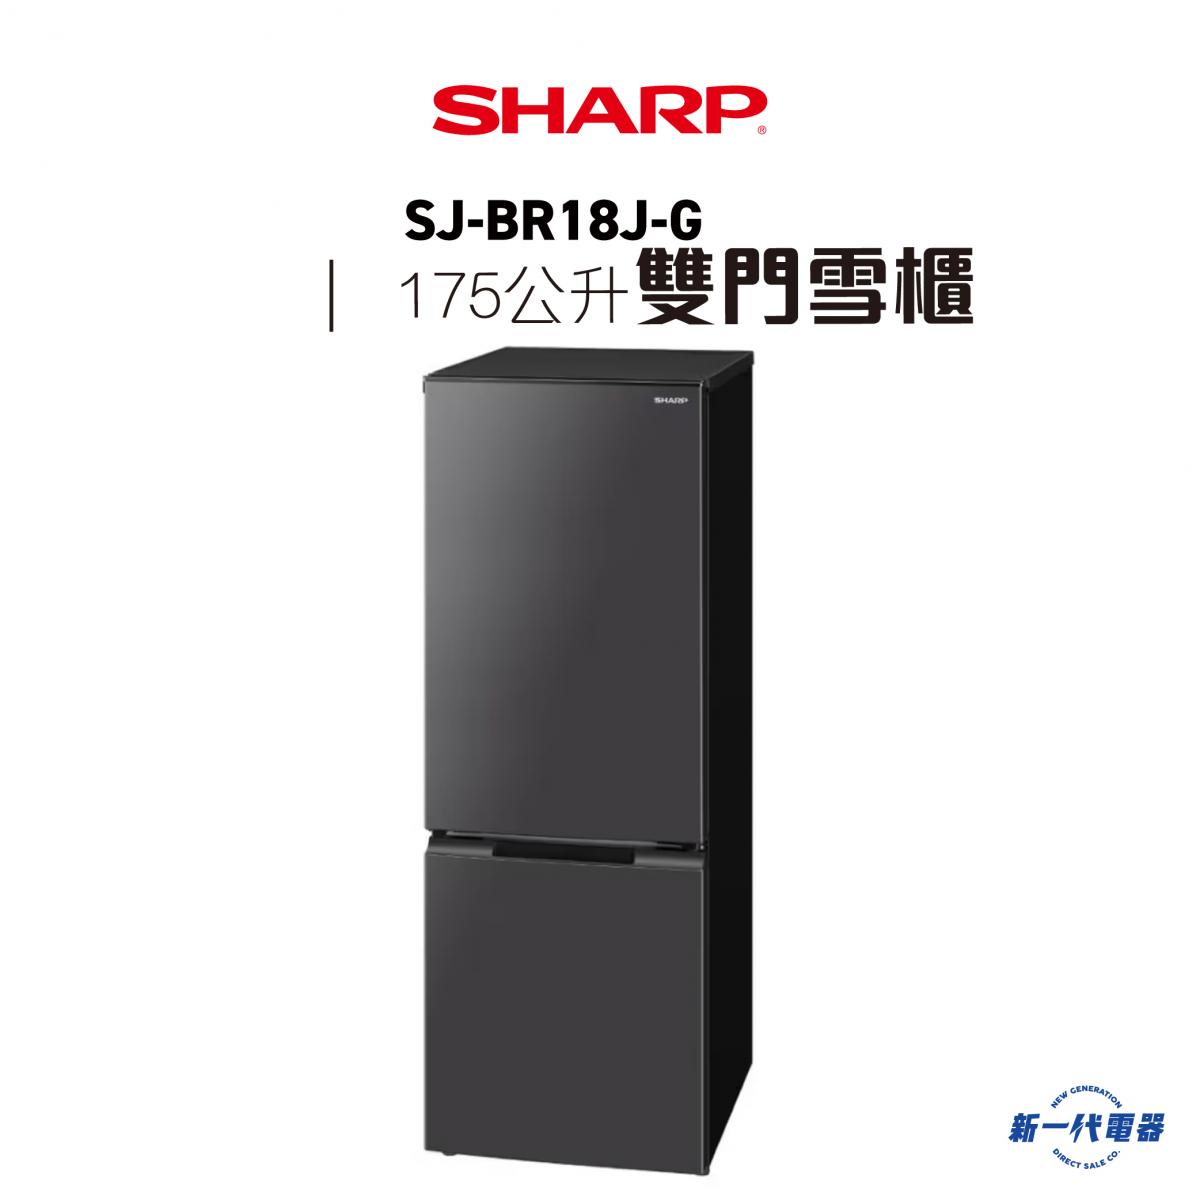 SJBR18JG  -簡約系列 下置式冷凍雙門無霜雪櫃  (SJ-BR18J-G)